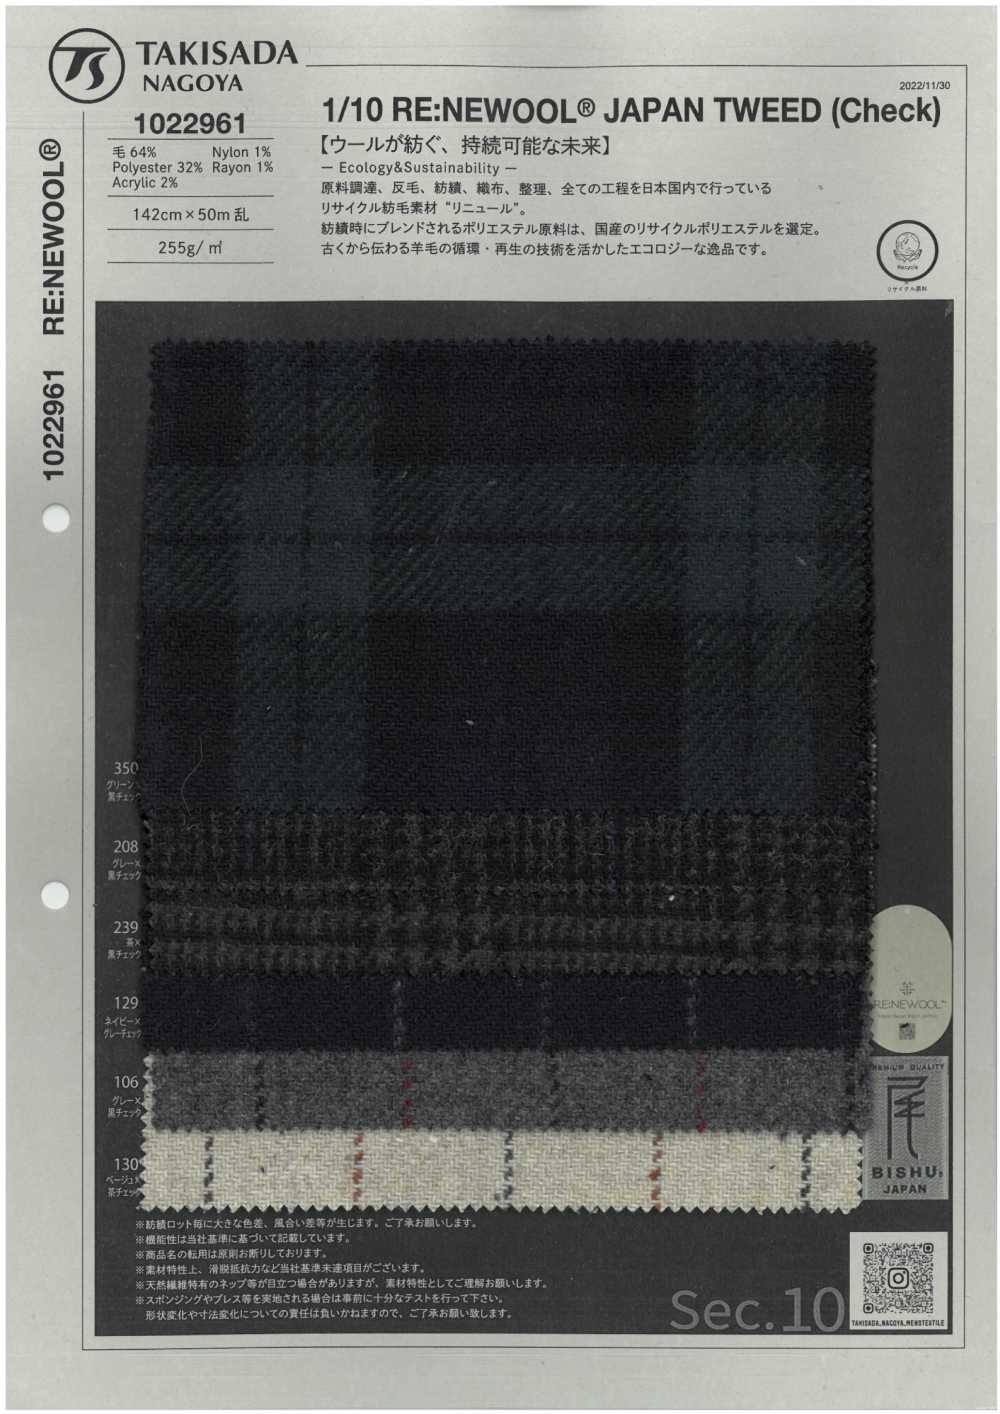 1022961 1/10 RE:NEWOOL®︎ JAPAN TWEED (Check)[Textilgewebe] Takisada Nagoya